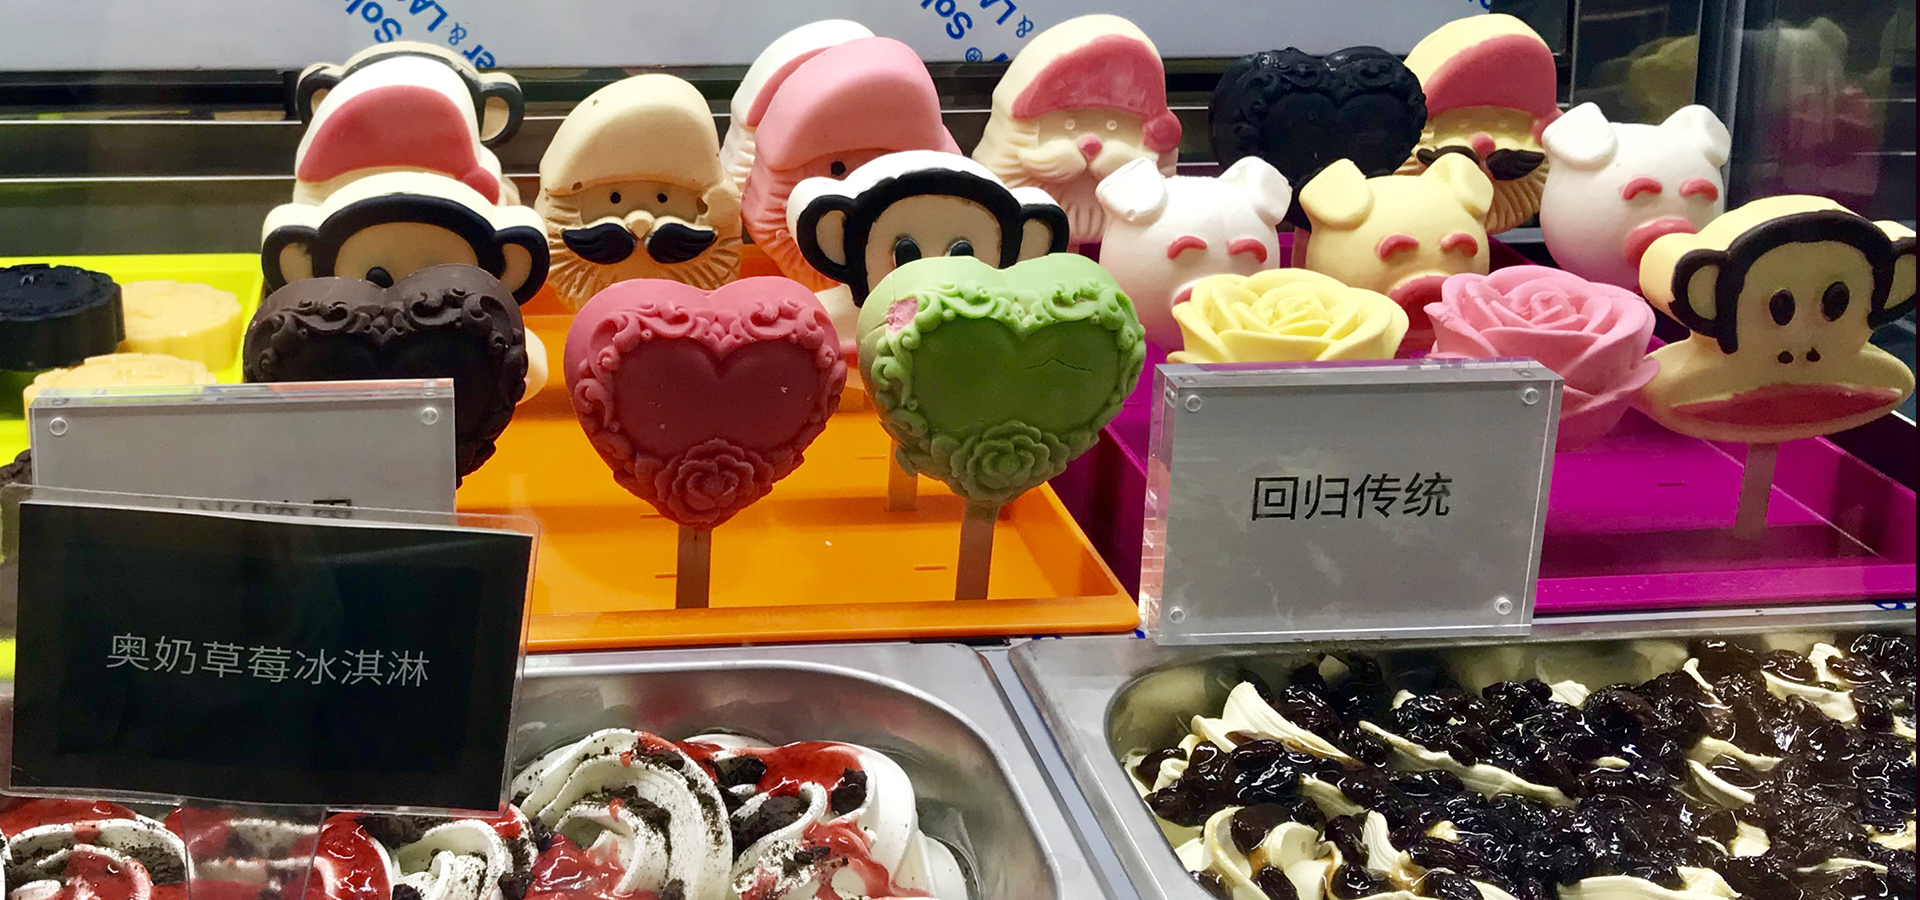 第22届中国冰淇淋及冷冻食品产业博览会在天津开幕